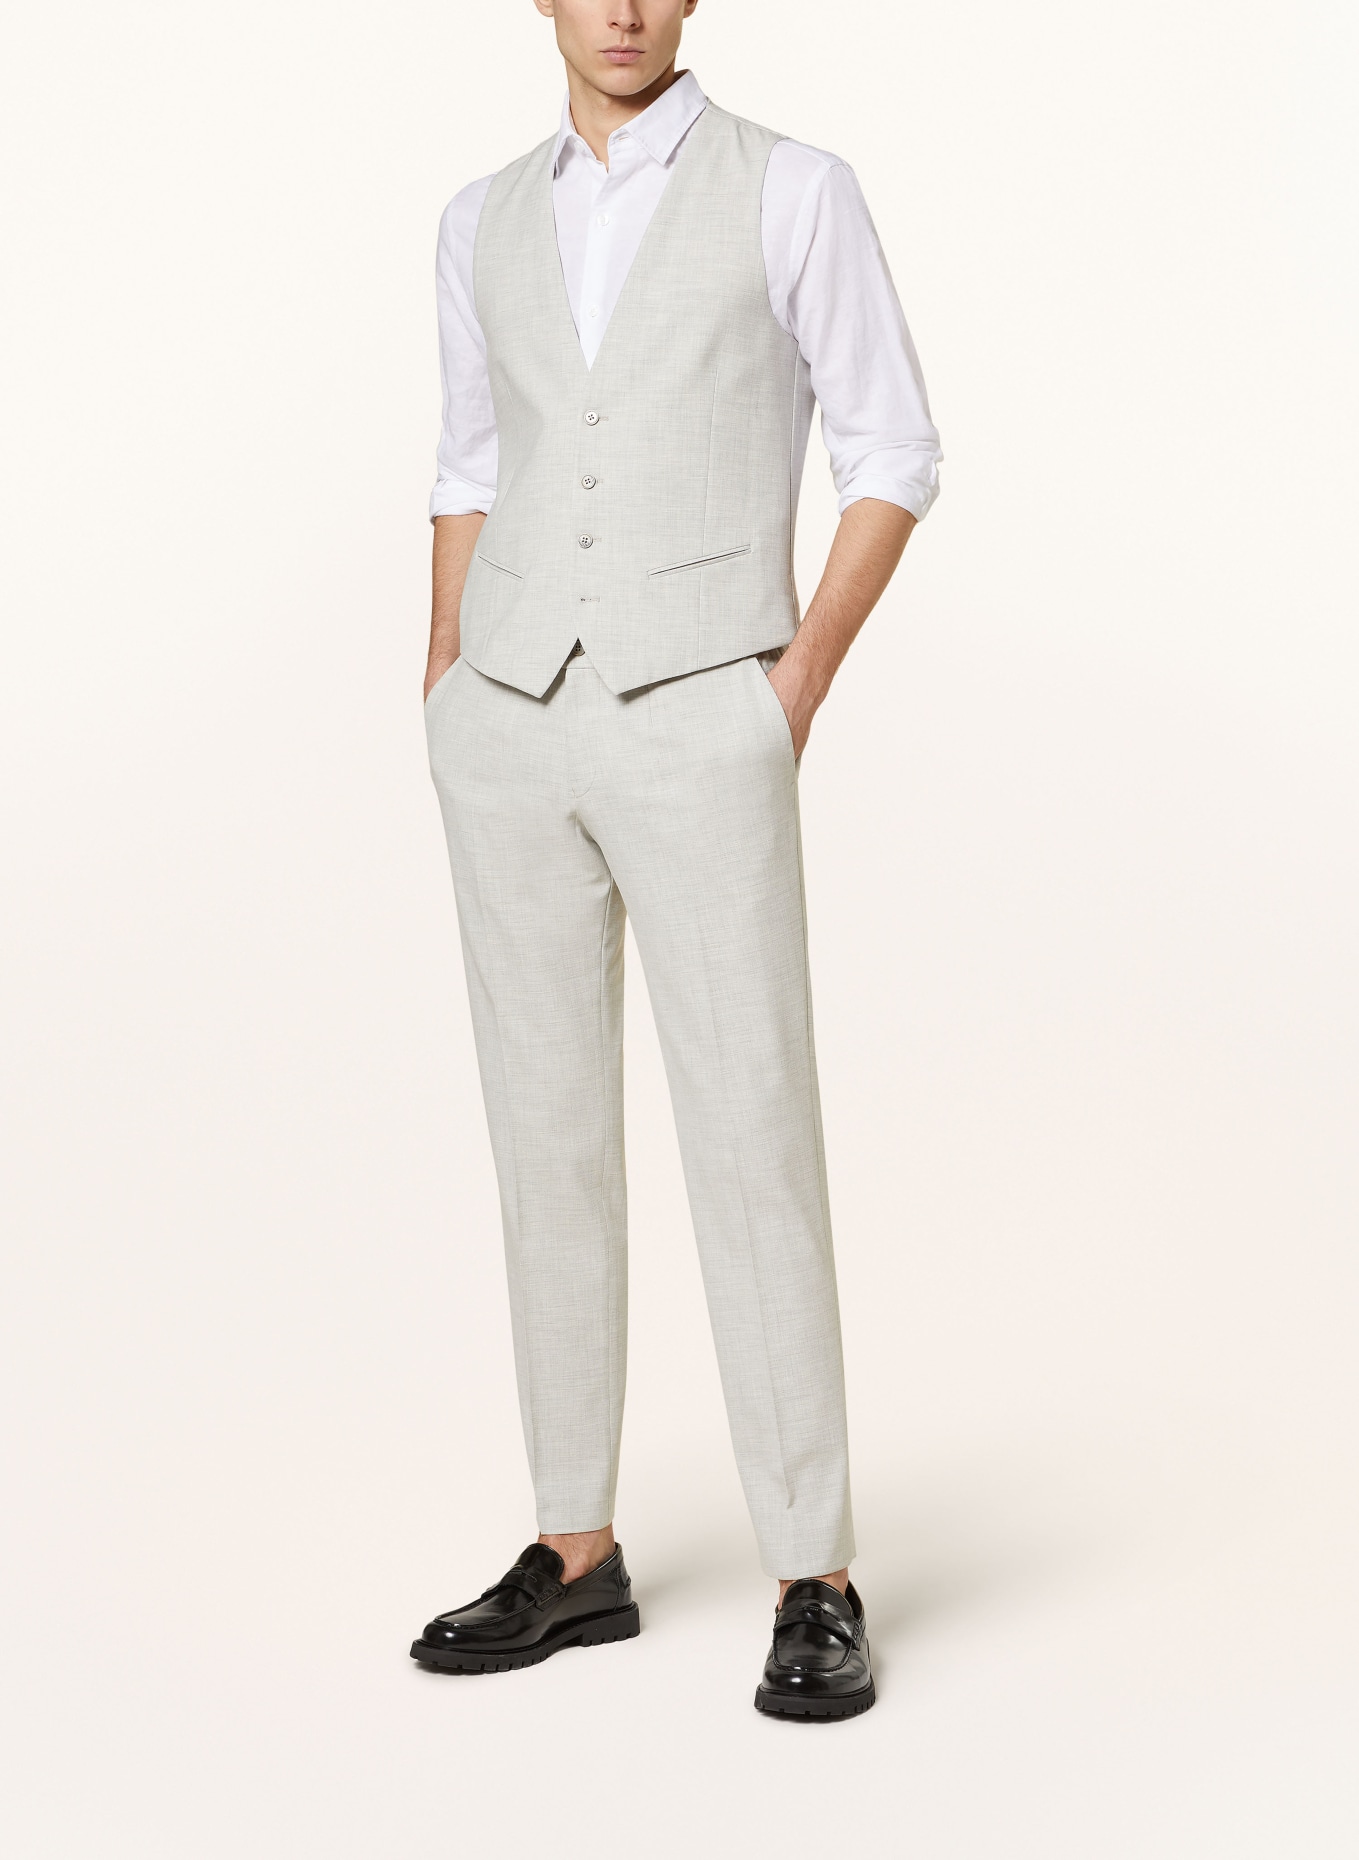 PAUL Suit vest extra slim fit, Color: LIGHT GRAY (Image 3)